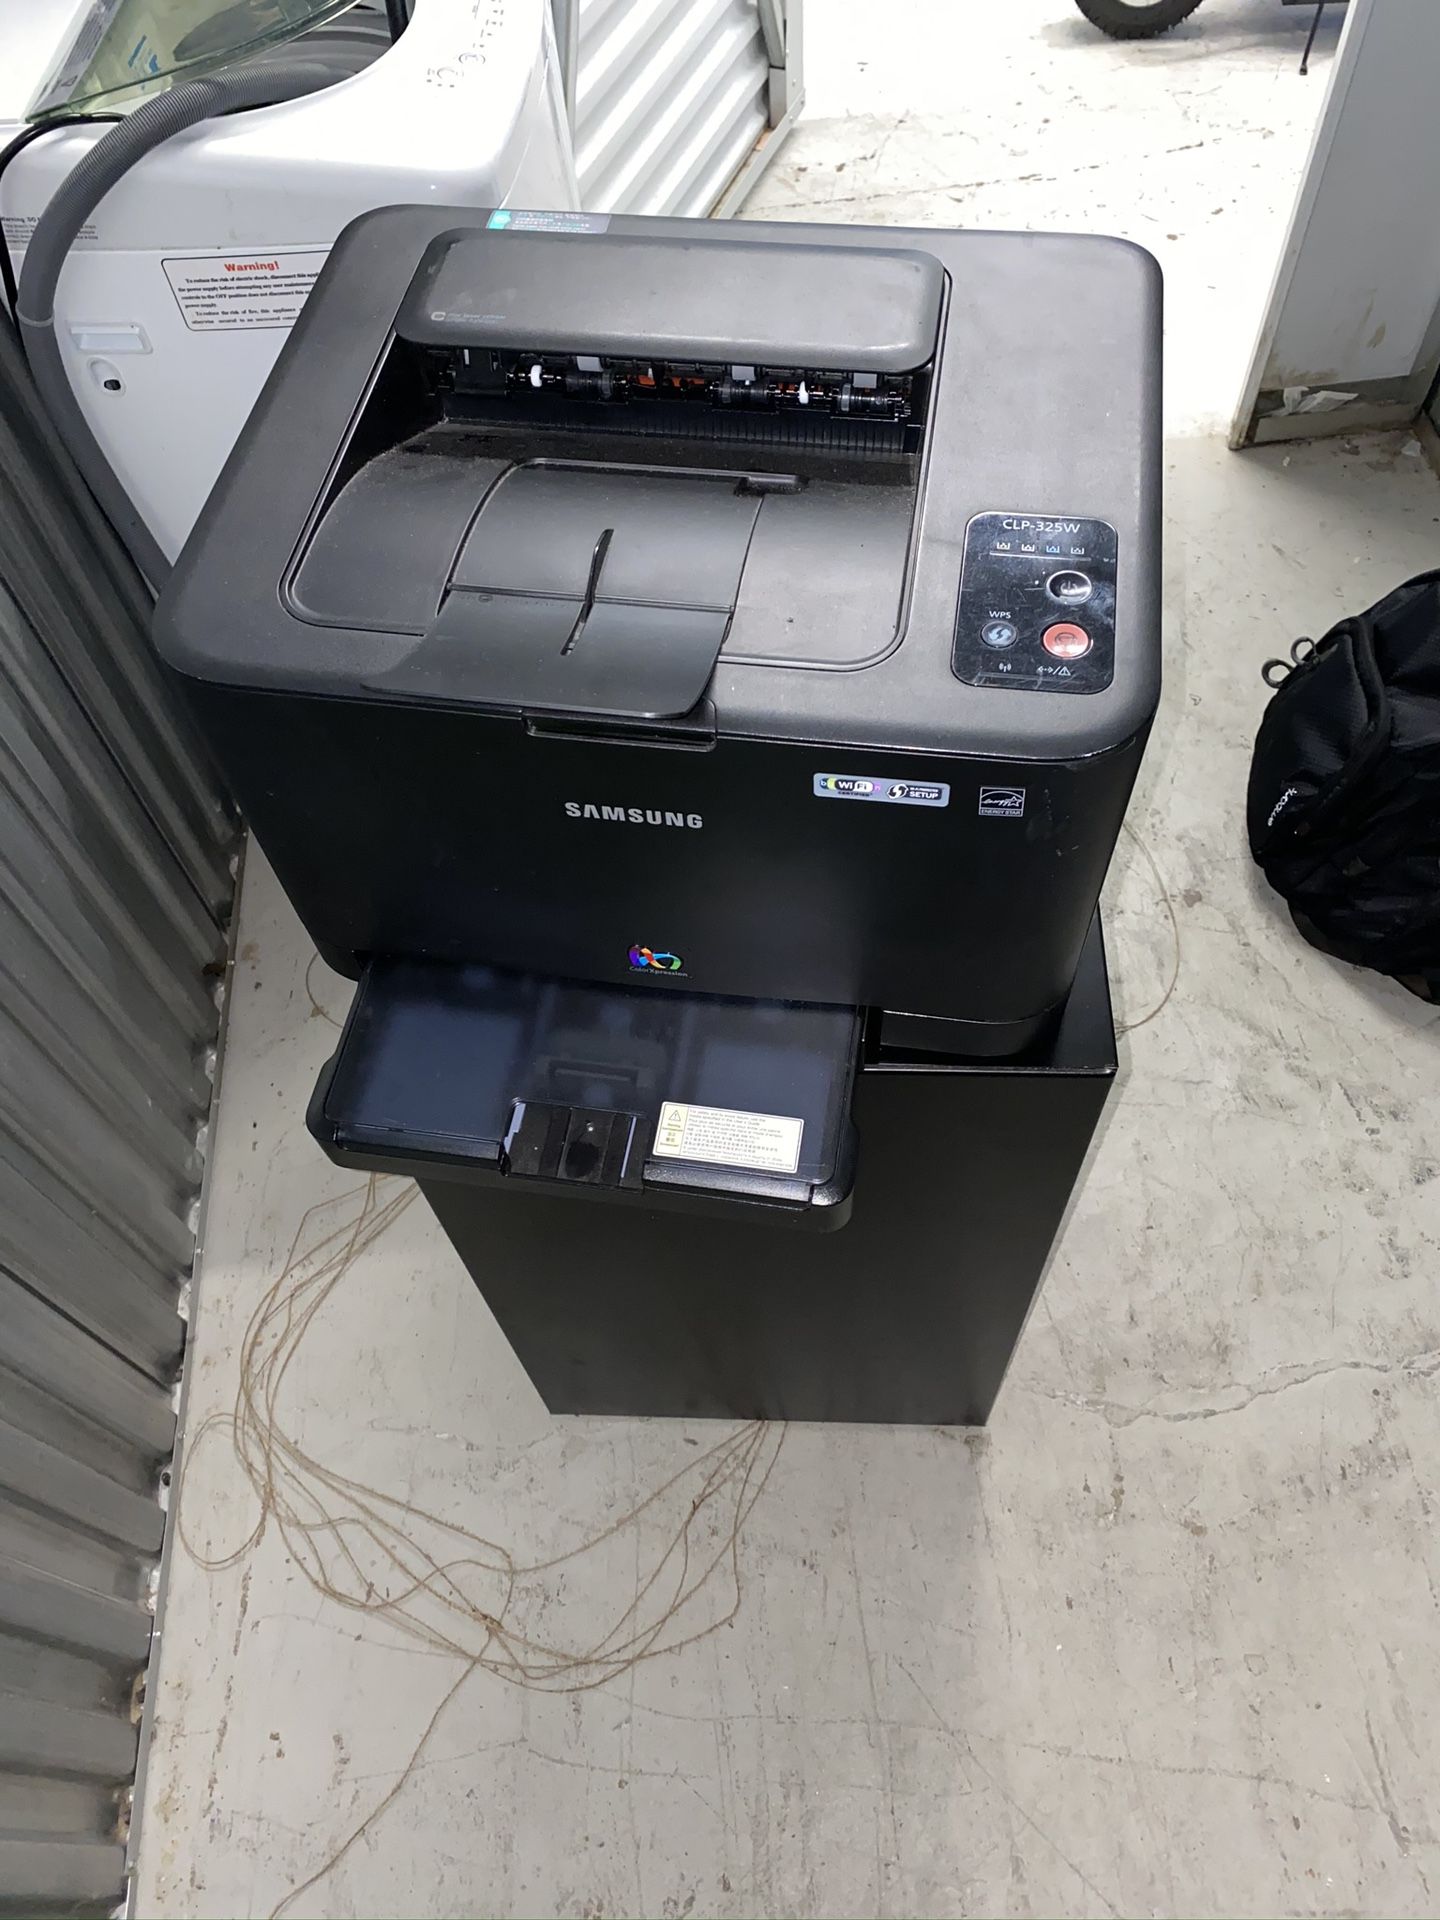 Samsung Printer (CLP-325W)